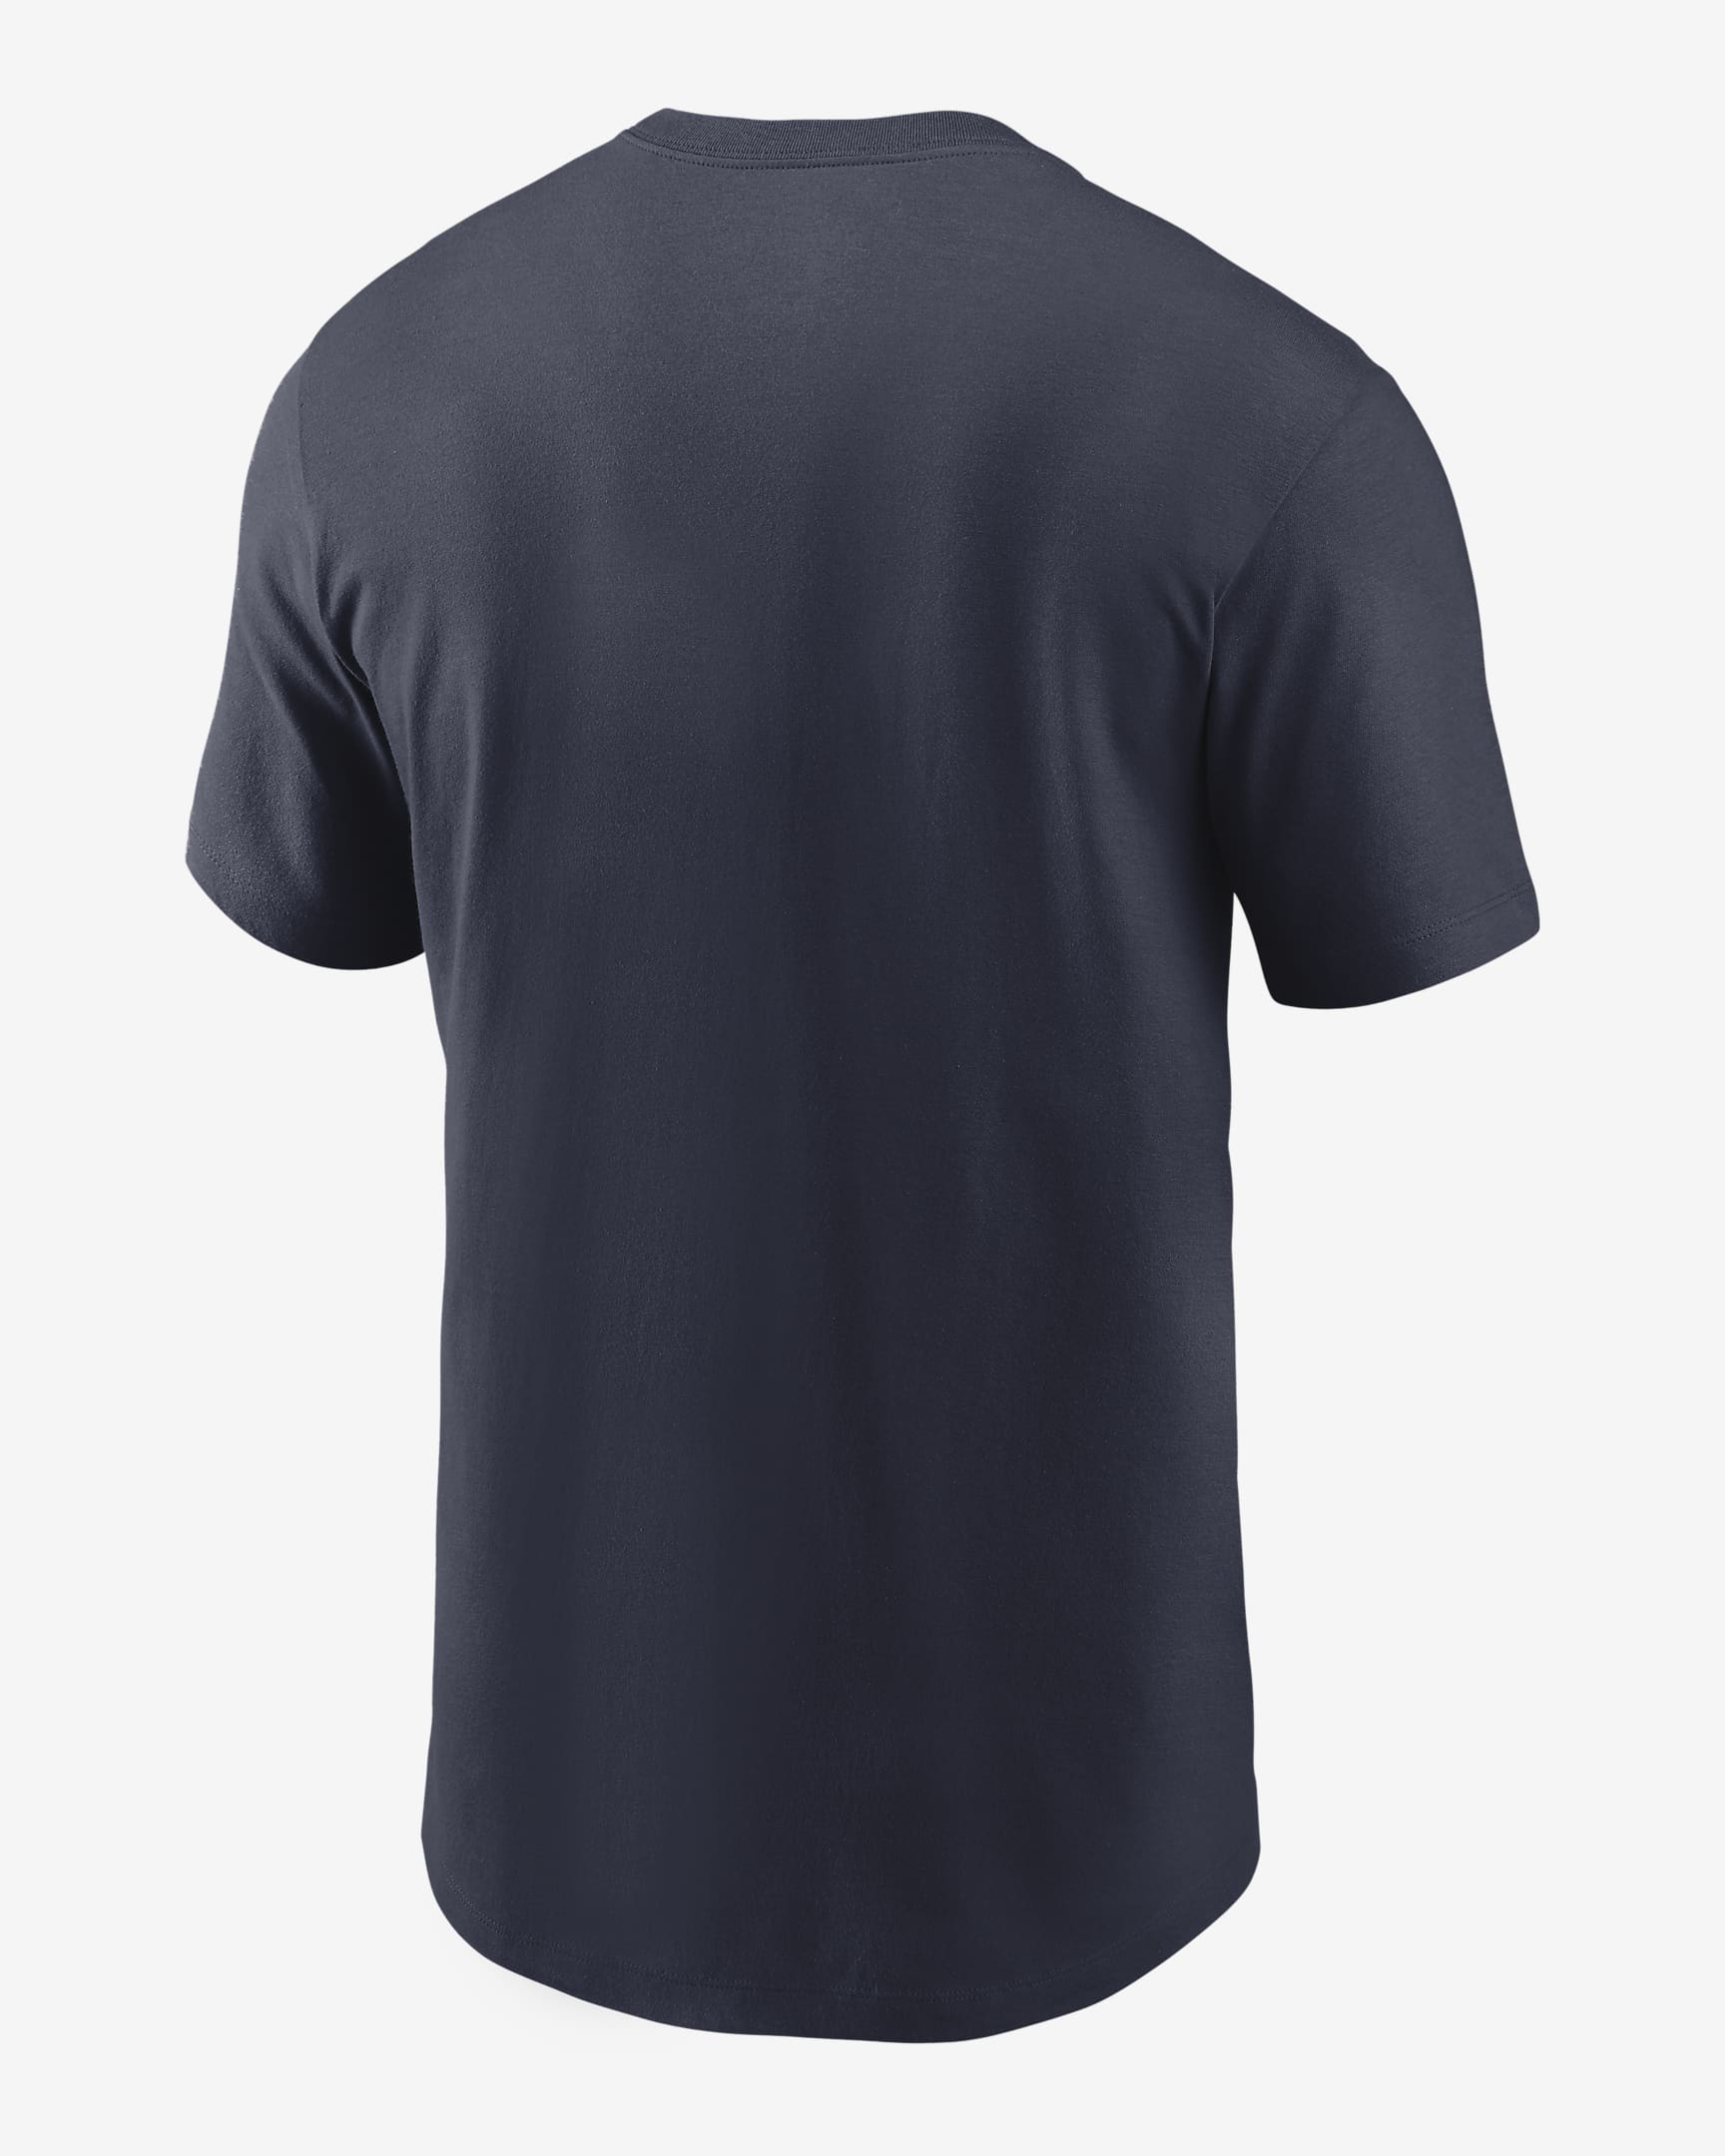 Nike (NFL New England Patriots) Men's T-Shirt. Nike.com